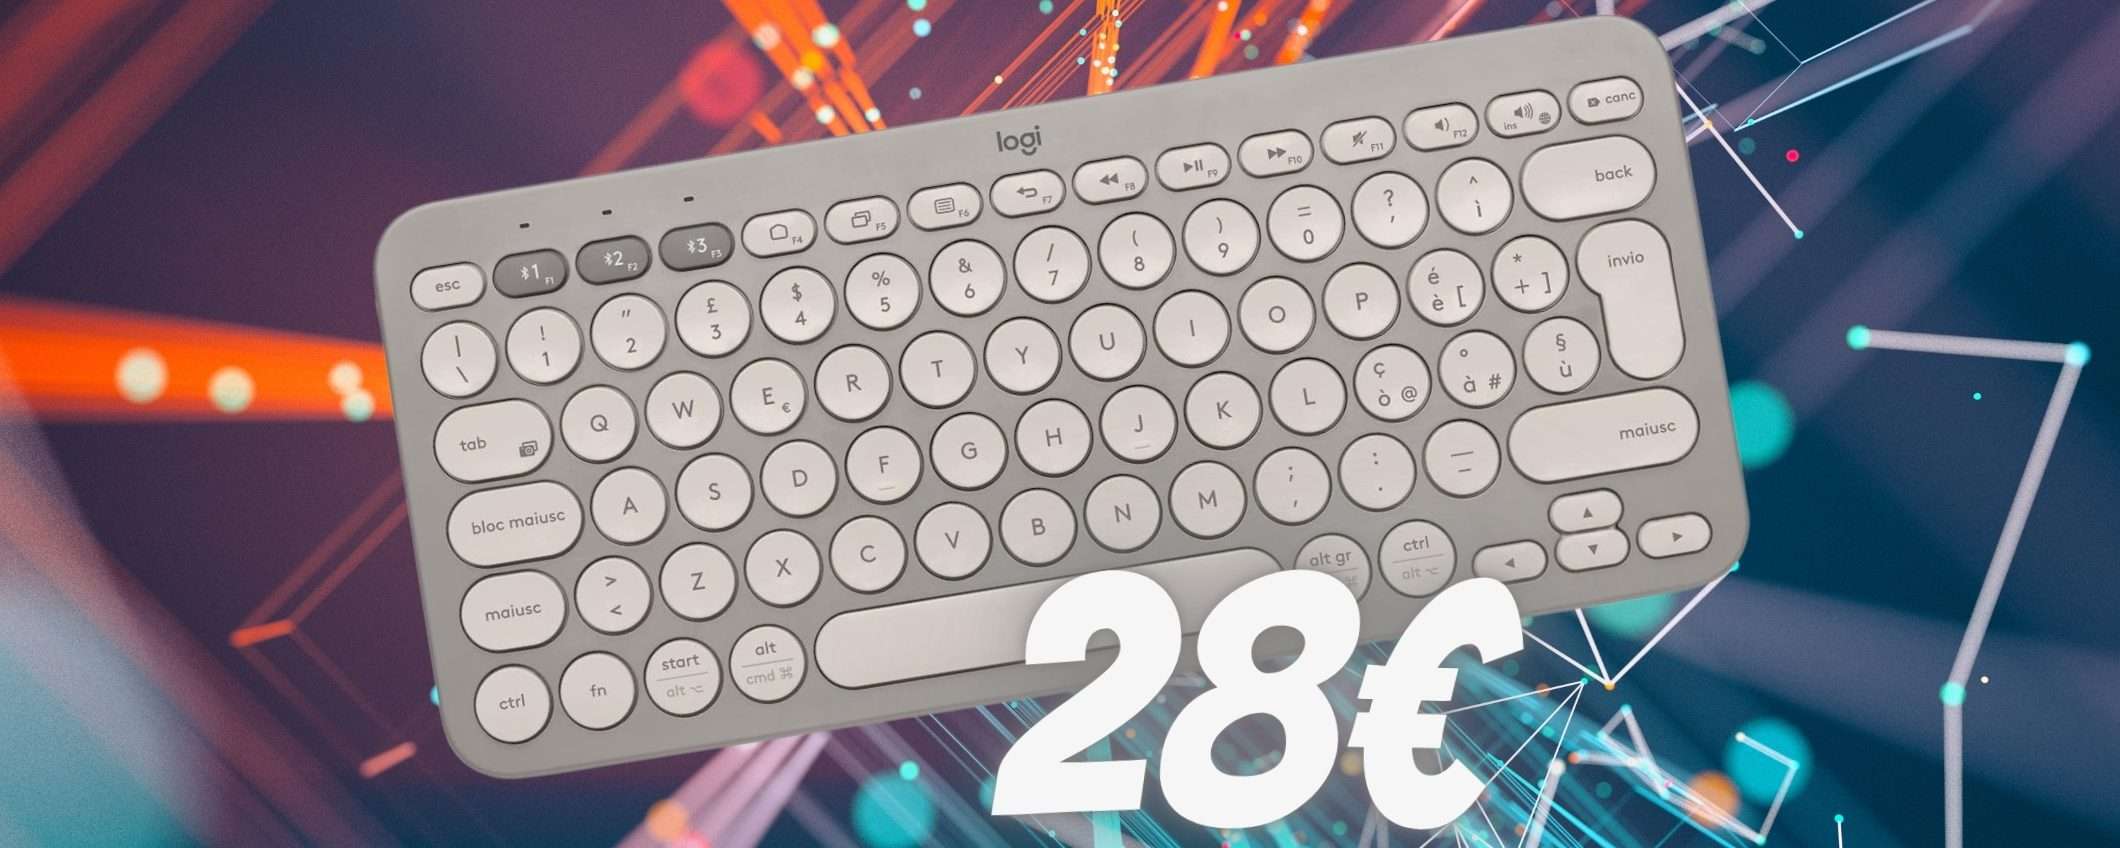 Logitech K380: tastiera wireless compatta che NON ha RIVALI ora a 28€